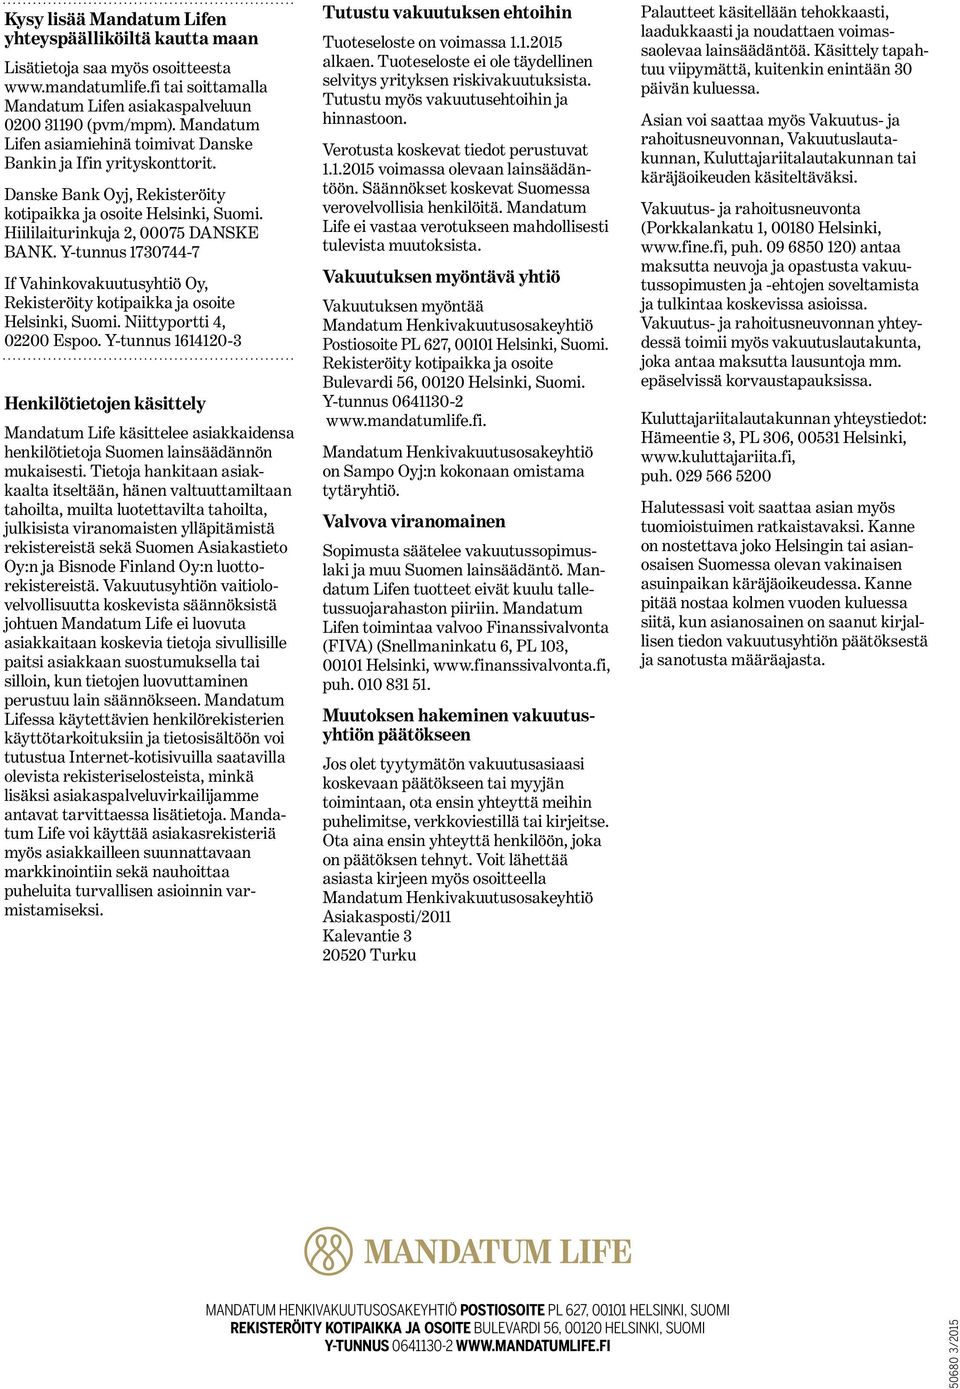 Y-tunnus 1730744-7 If Vahinkovakuutusyhtiö Oy, Rekisteröity kotipaikka ja osoite Helsinki, Suomi. Niittyportti 4, 02200 Espoo.